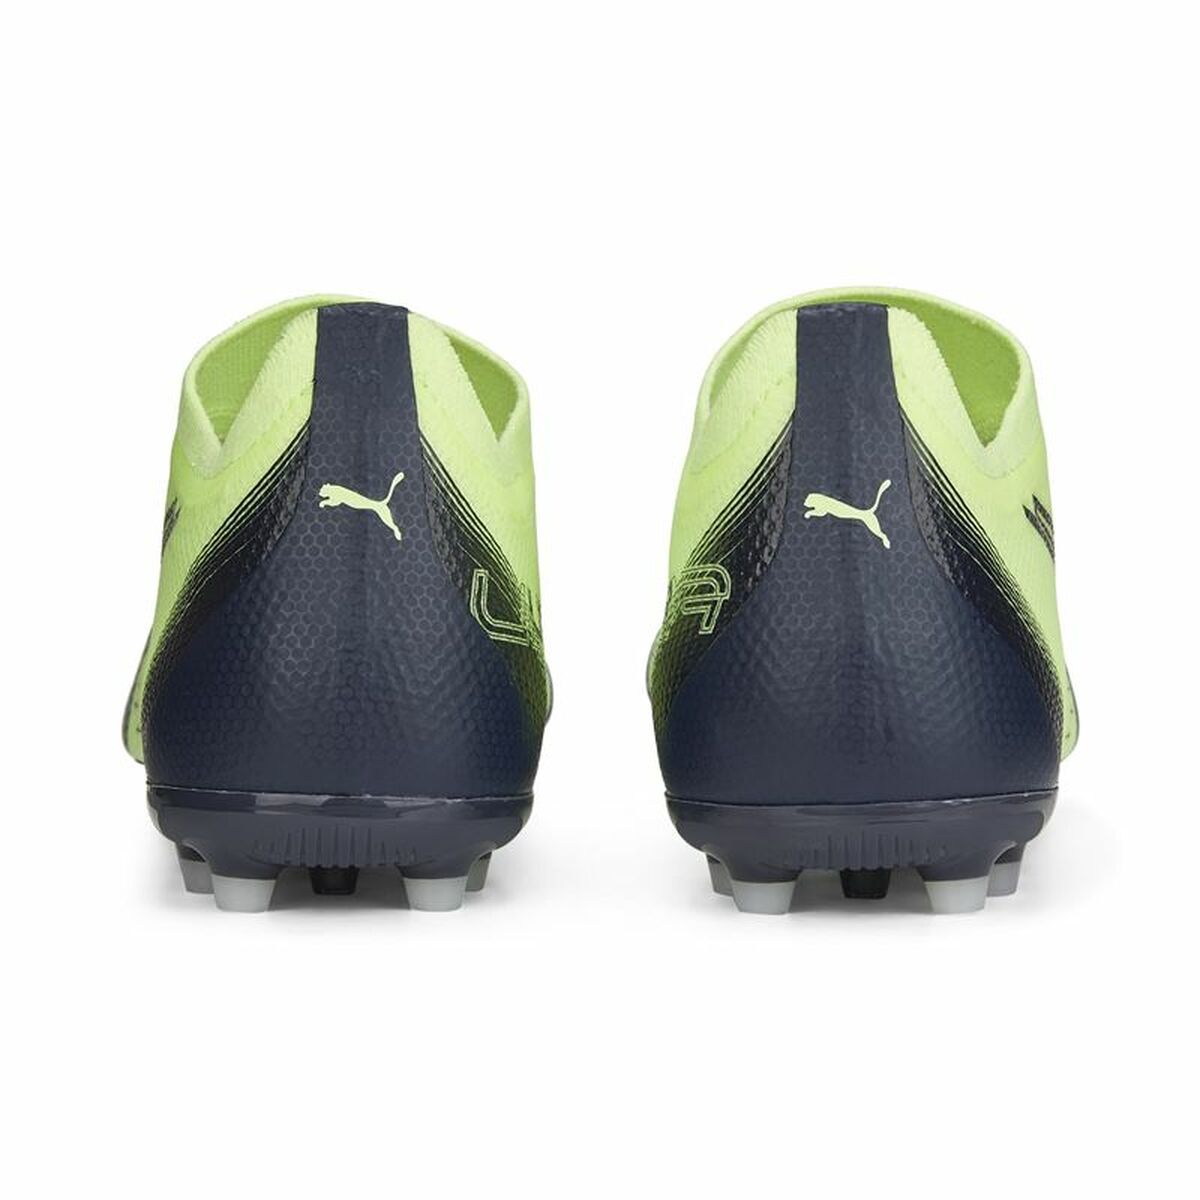 Adult's Football Boots Puma Ultramatch MG Fizzy Unisex Light Green